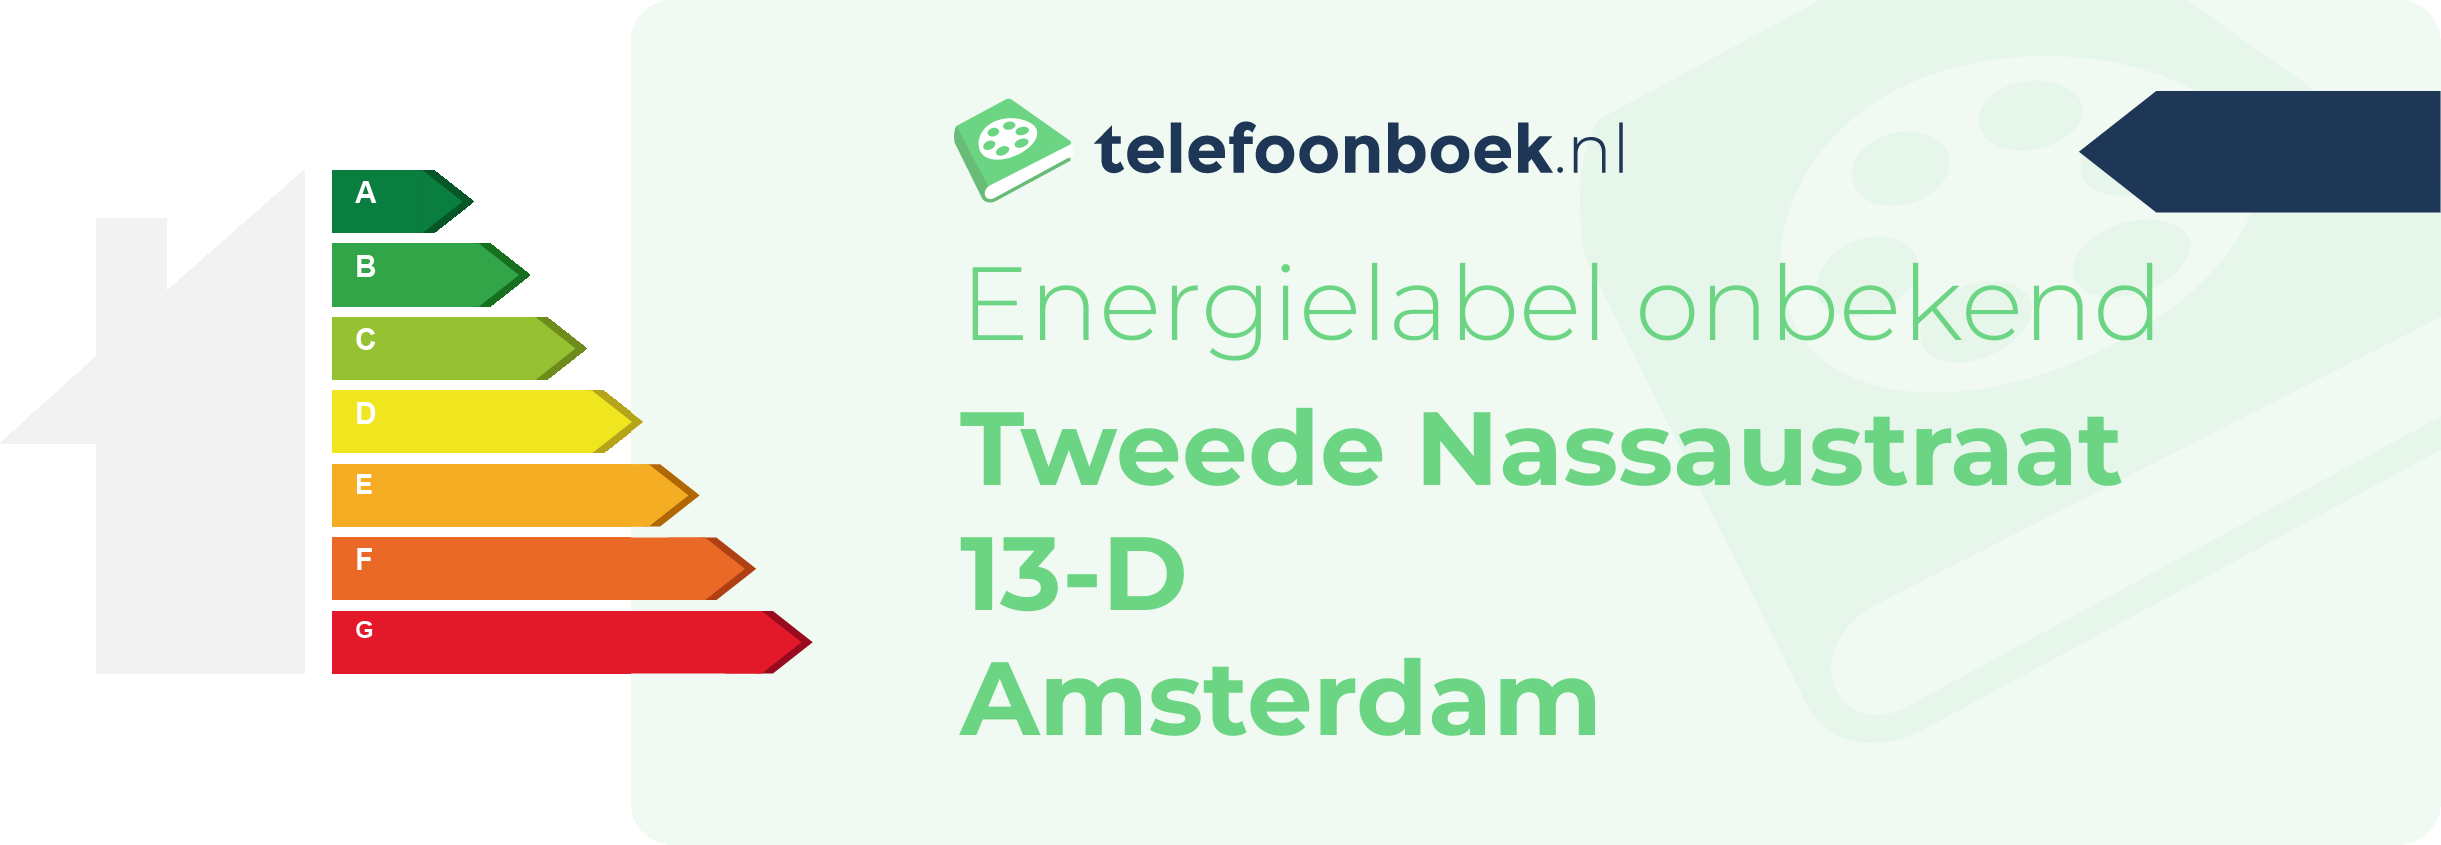 Energielabel Tweede Nassaustraat 13-D Amsterdam